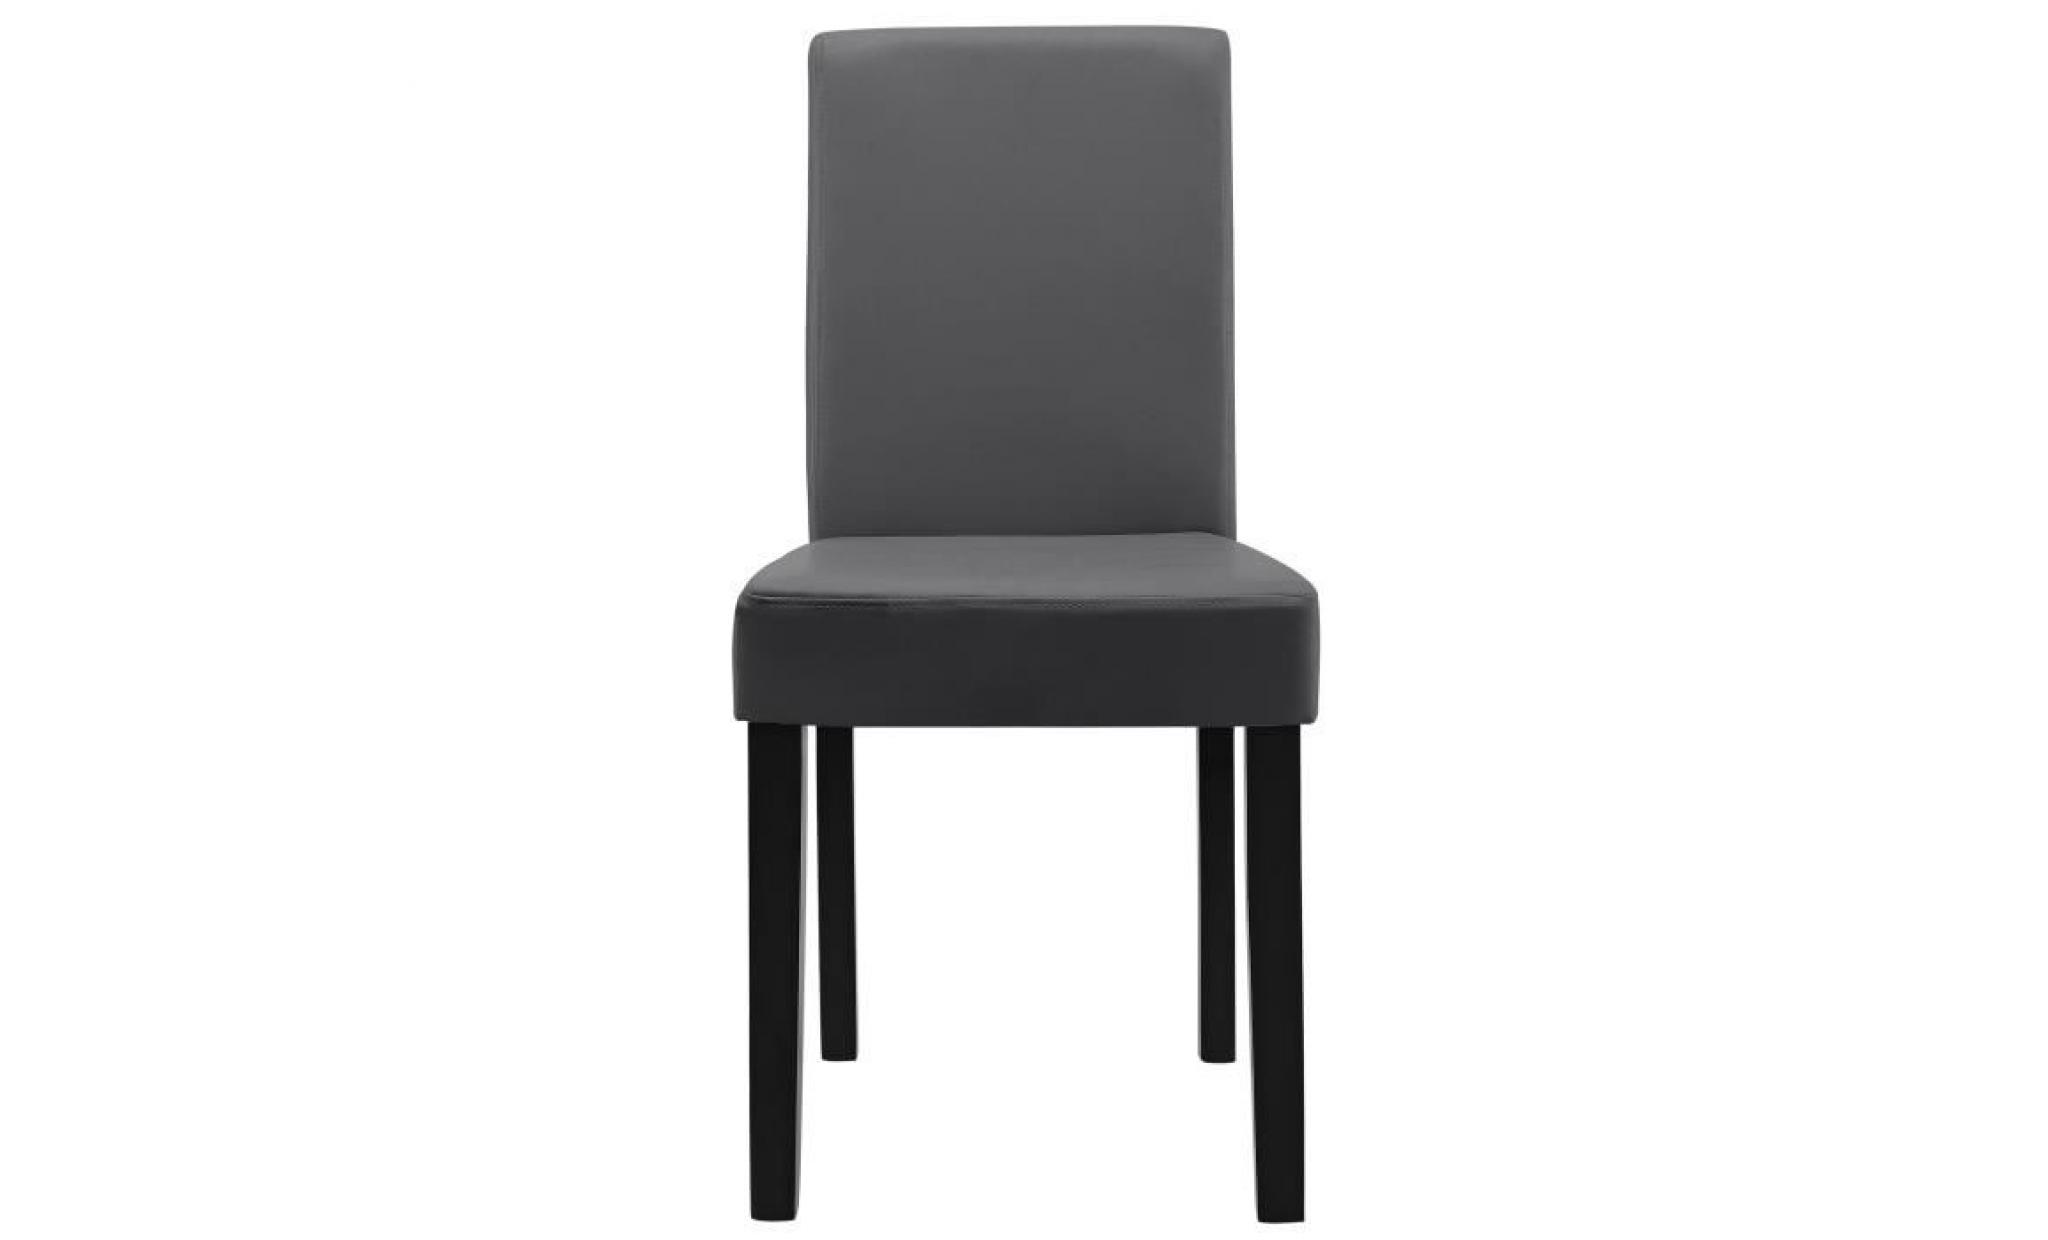 en.casa 6 chaises rembourrées (gris foncé) (de qualité supérieure) avec pieds en bois massif   housse en cuir synthétique   élégants pas cher